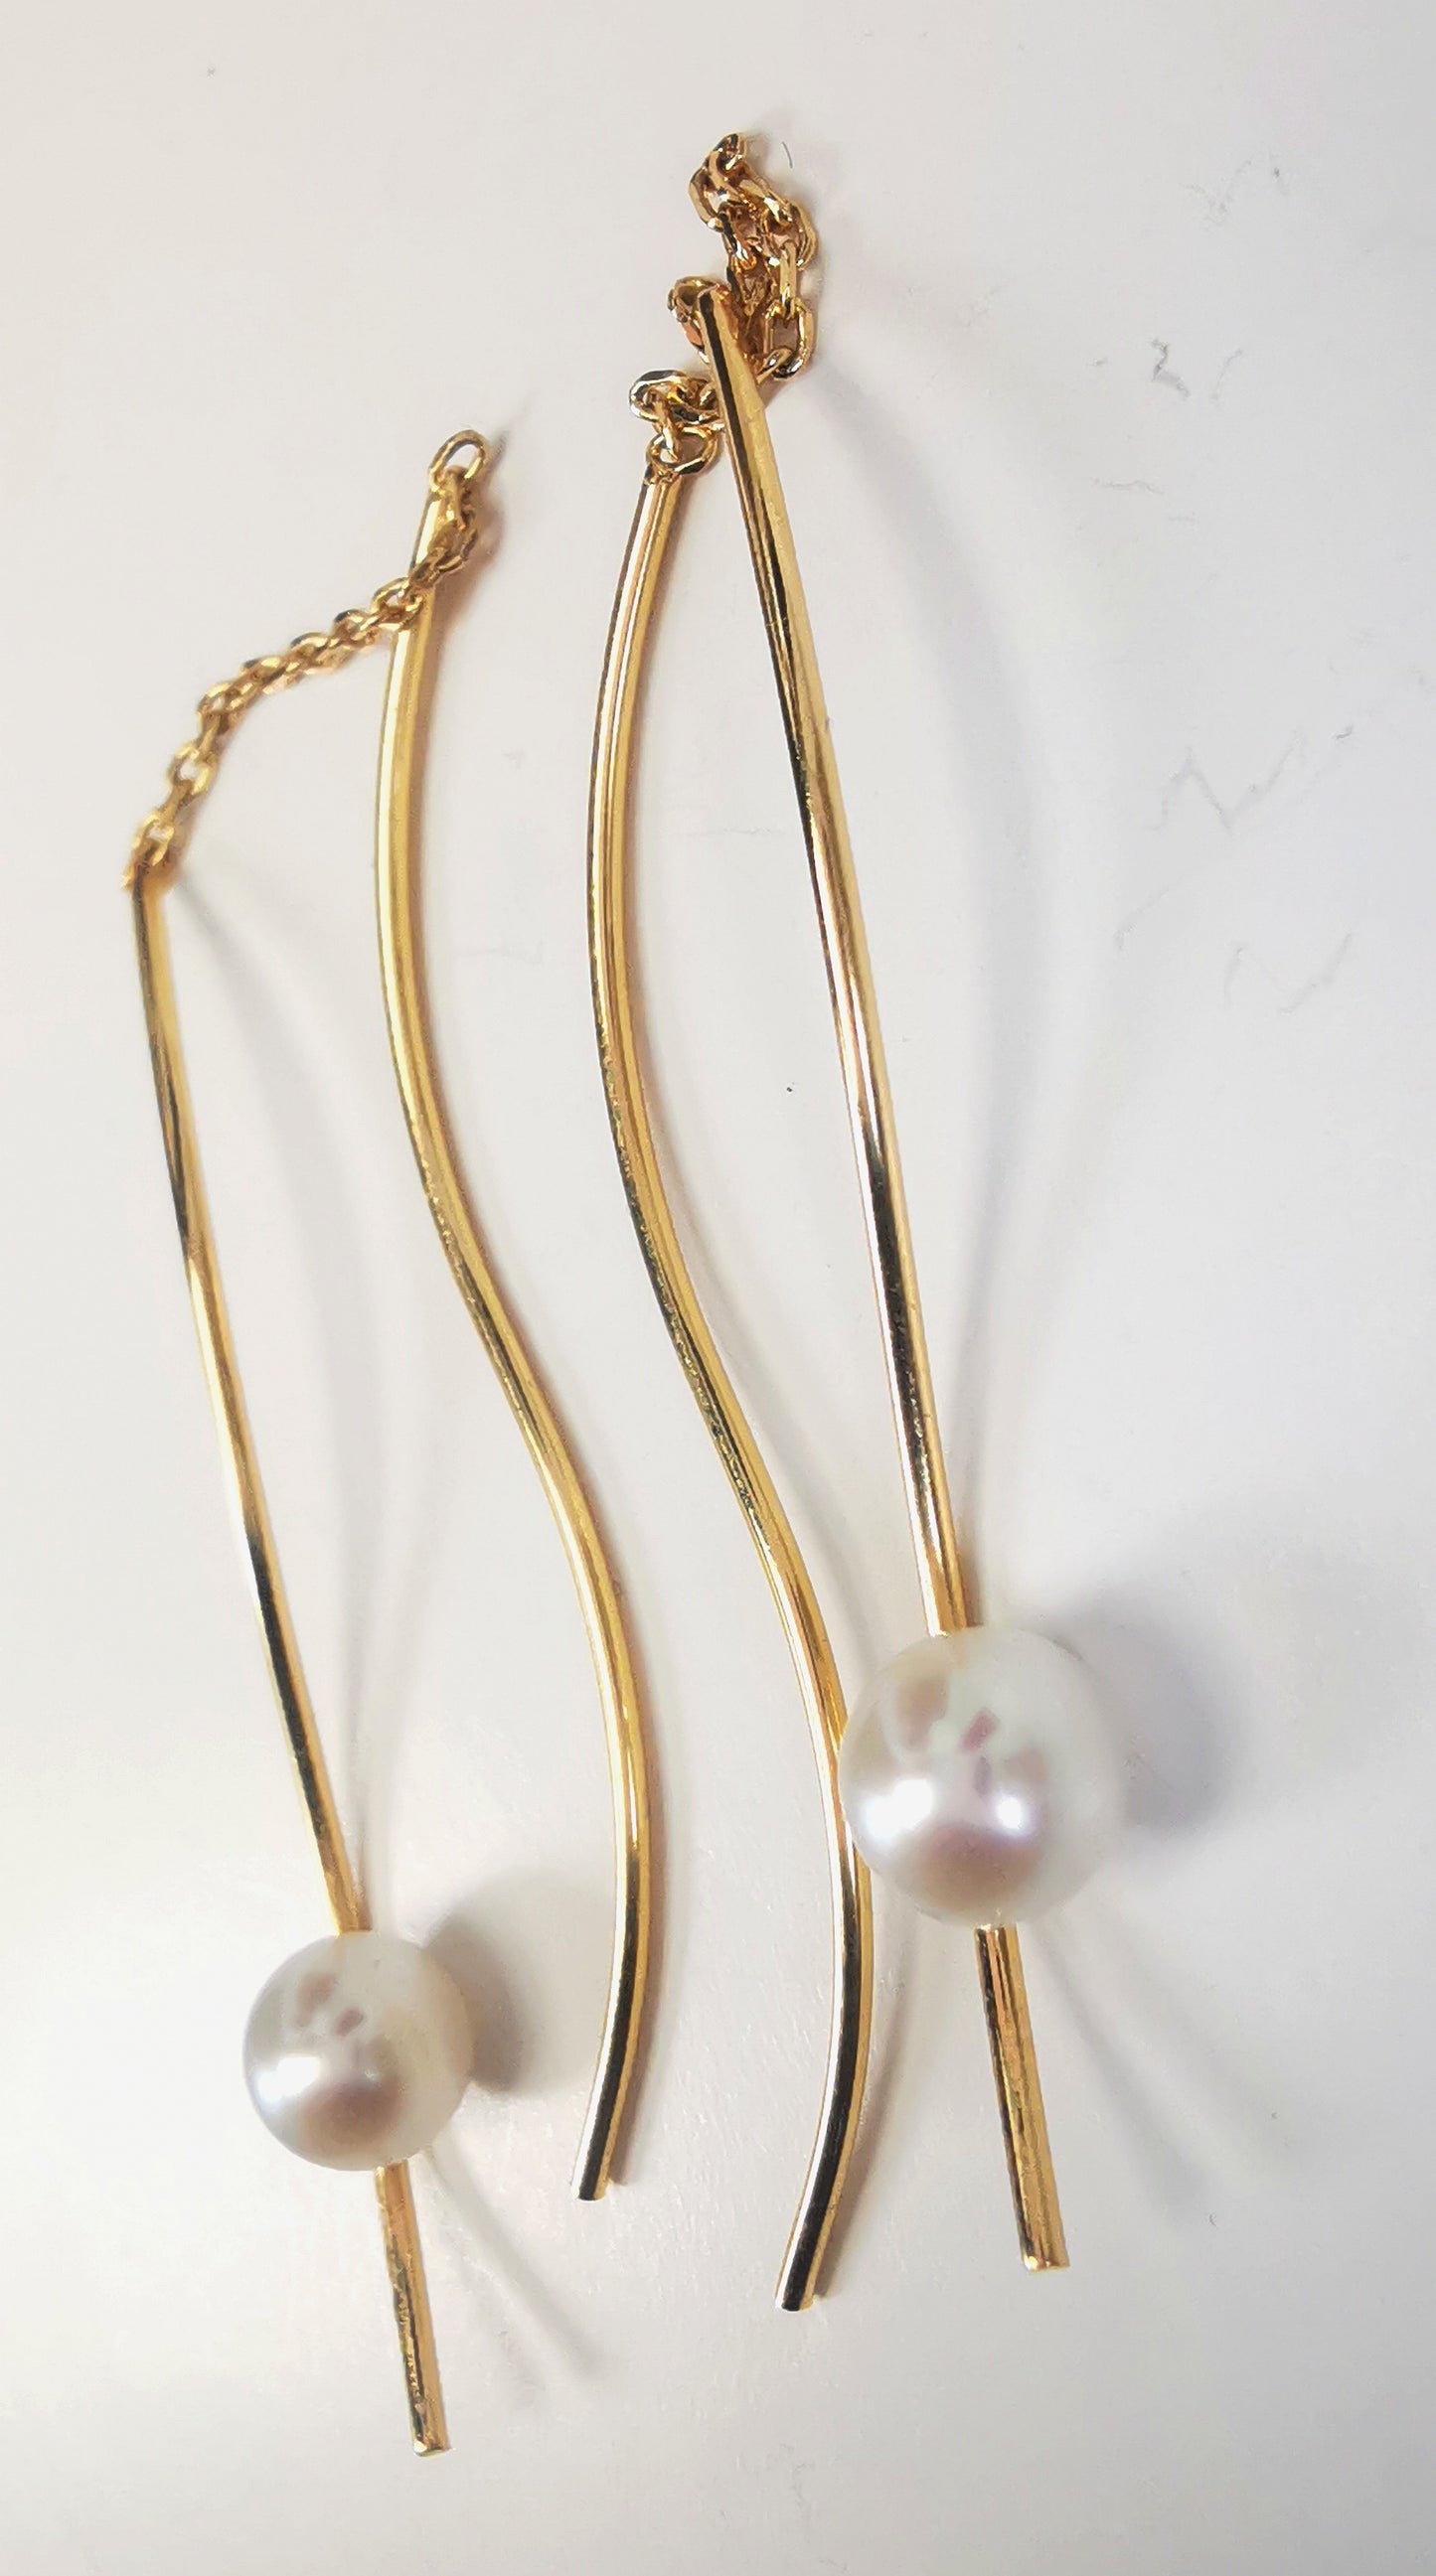 Boucles d'oreilles perles de culture blanches rondes 5mm sur pendants plaqués or. Les pendants sont constitués de deux "s" longs de 45mm reliés par 15mm de chaine. Sur un des 2 "s", la perle est montée perpendiculairement, à 8mm du bas. Présentées cote à cote, perle en bas, posées sur fond blanc. Vue en gros plan depuis la droite.